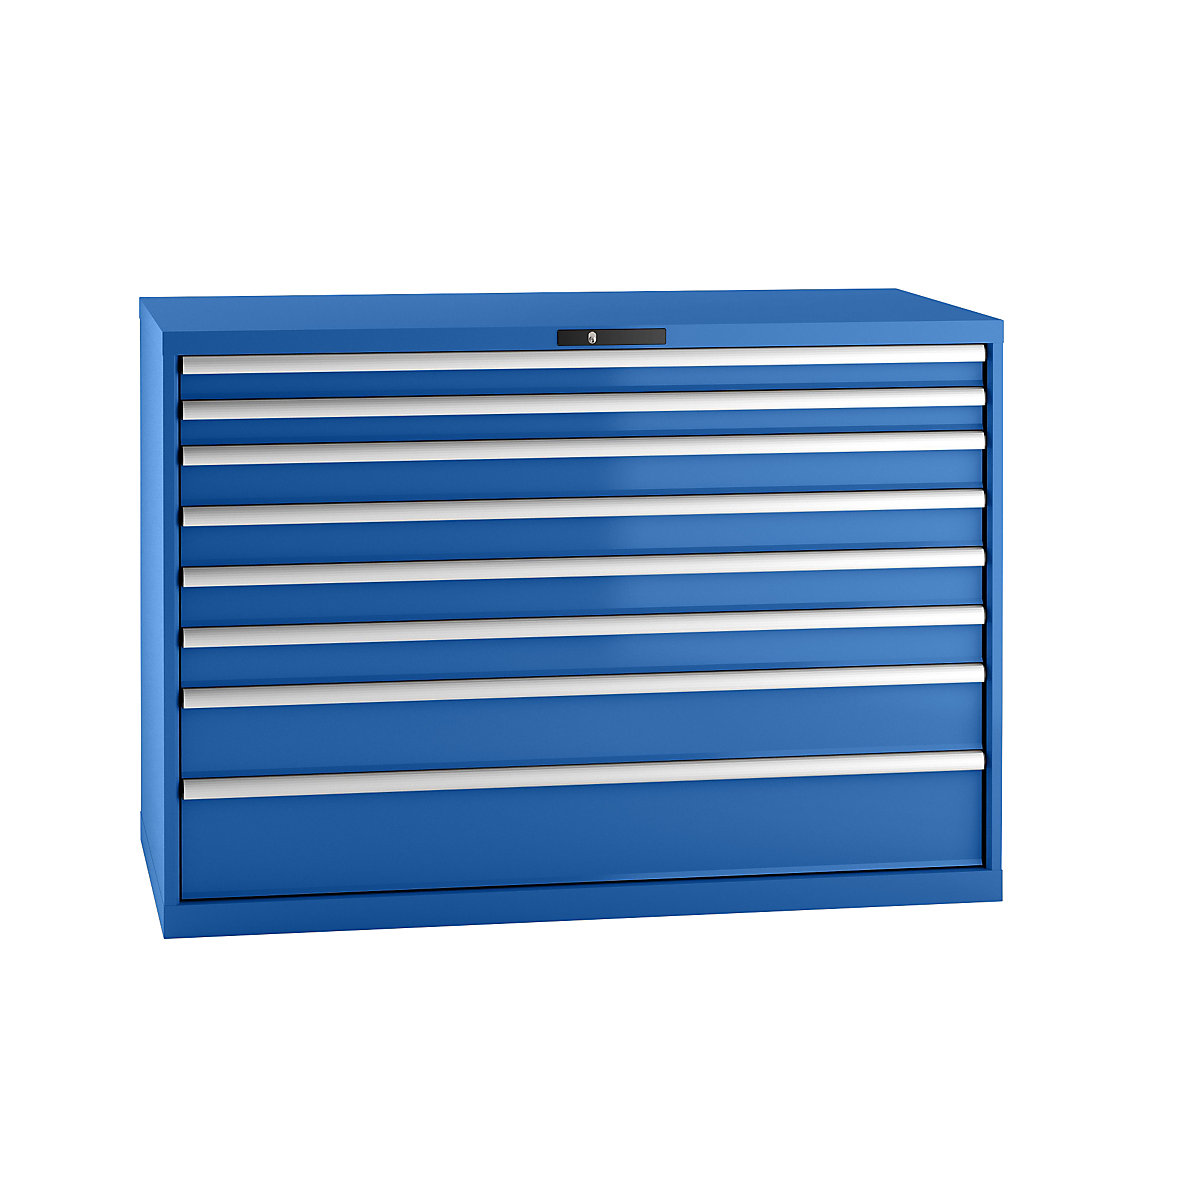 Predalnik, jeklena pločevina – LISTA, VxŠ 1000 x 1431 mm, 8 predalov, nosilnost 75 kg, encijan modra-17